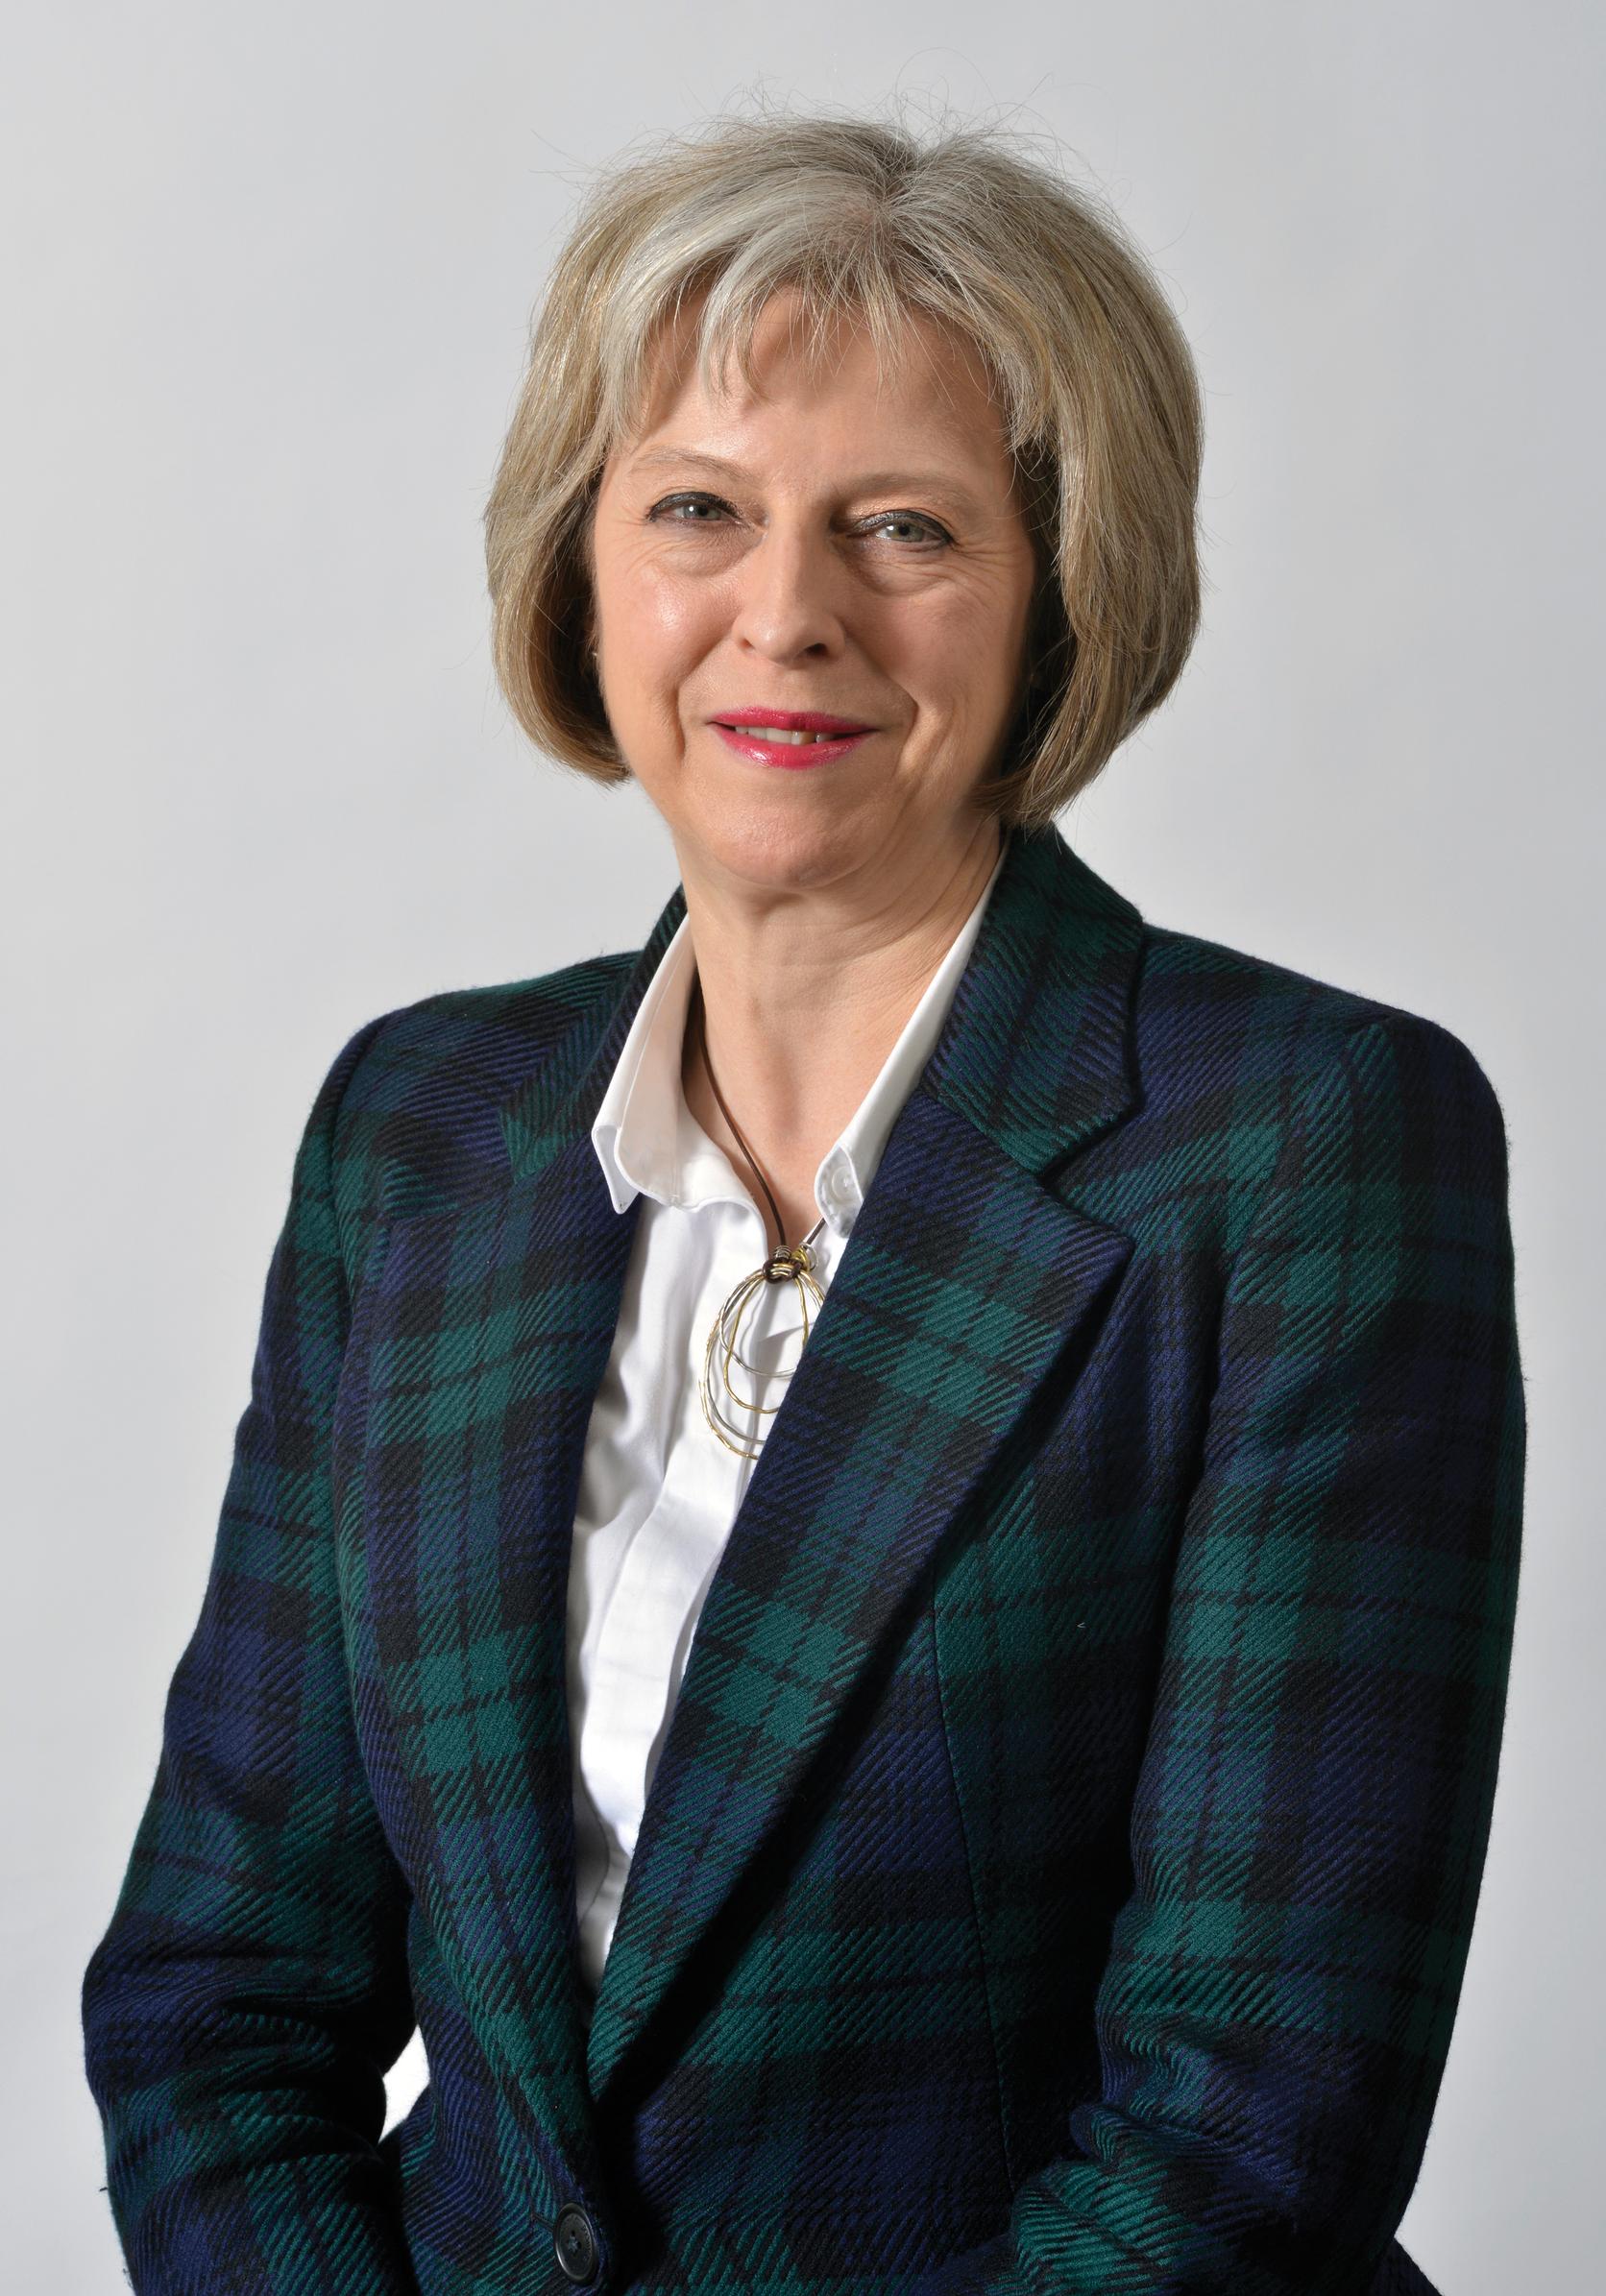 PM Theresa May